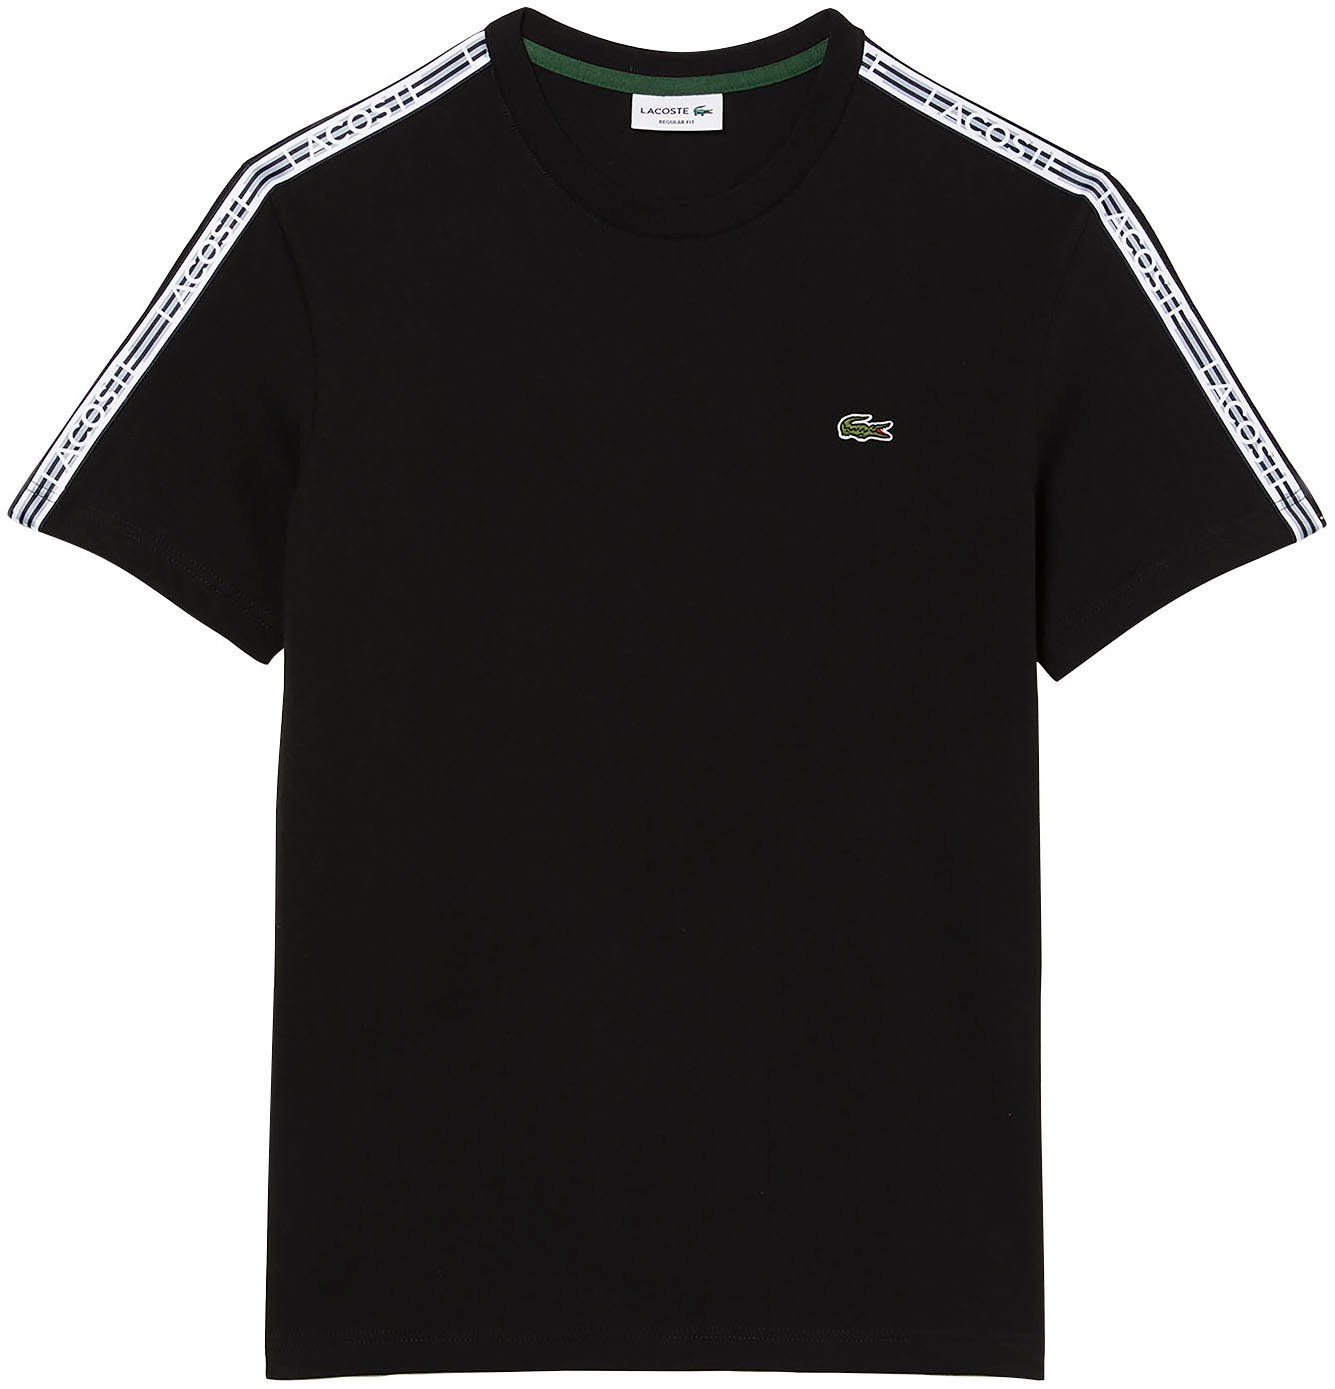 Schultern Kontrastband T-Shirt an den Lacoste mit black beschriftetem